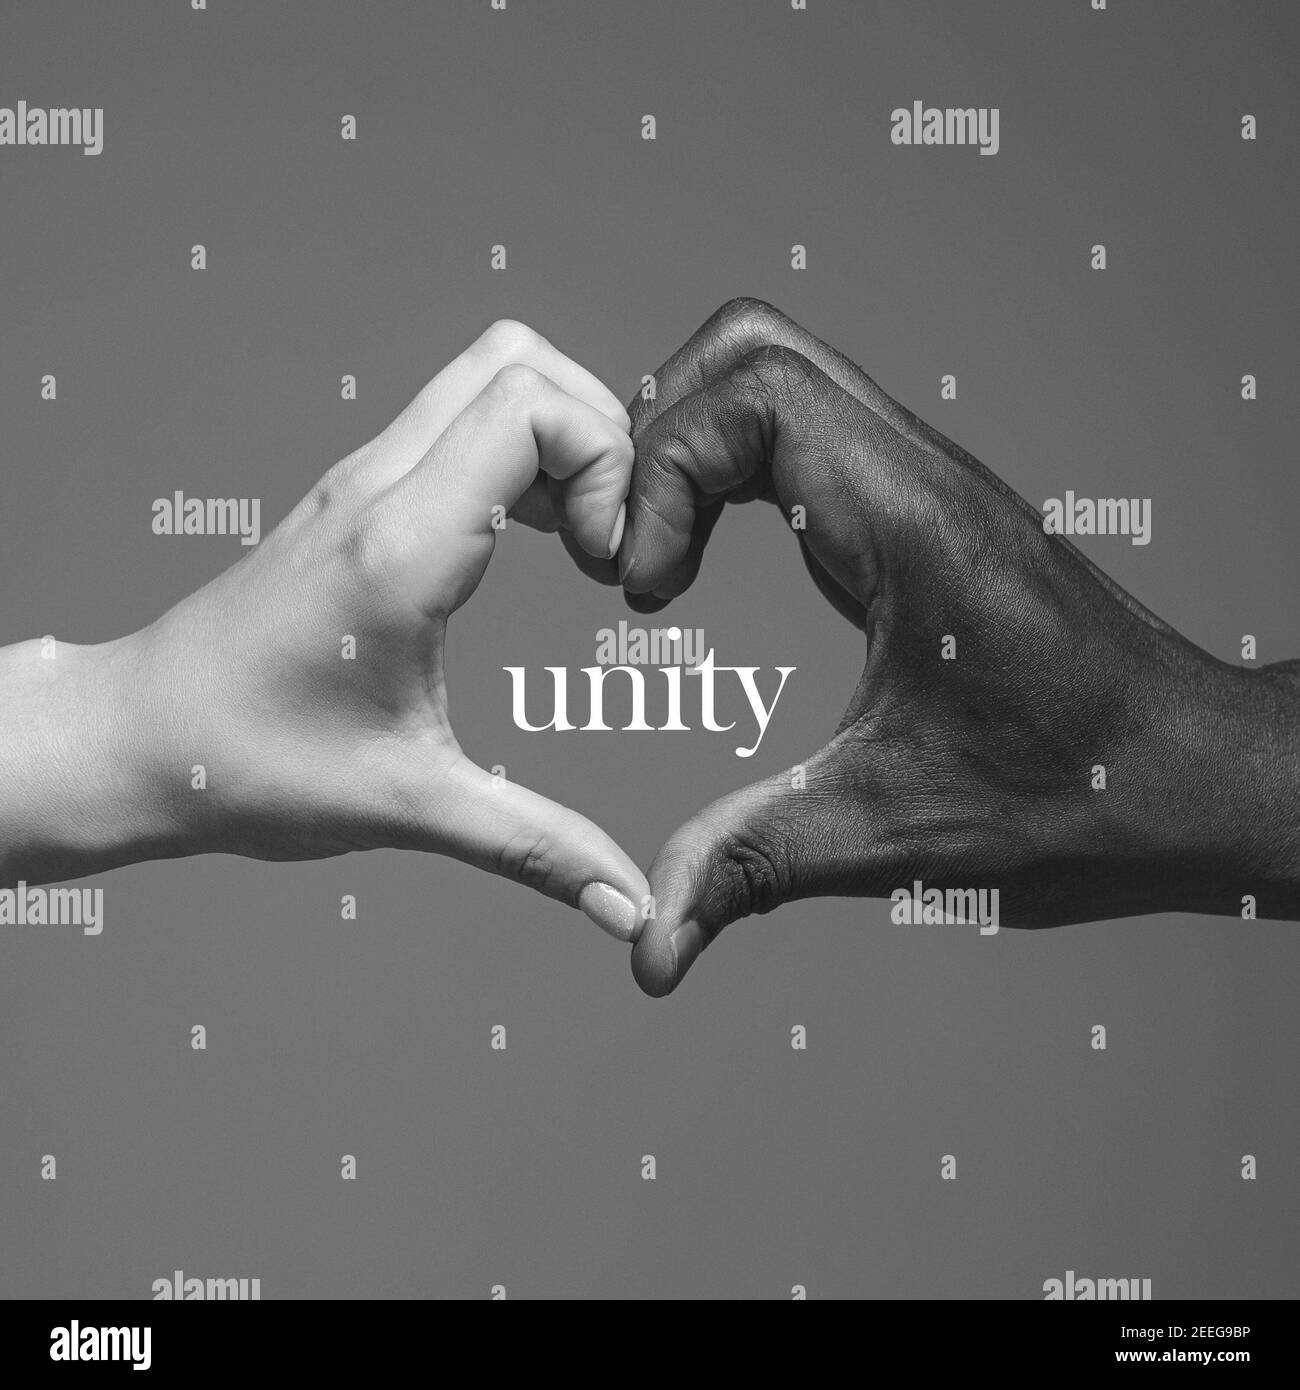 Herzform. Afrikanische und kaukasische Hände gestikulieren auf grauem Studiohintergrund. Toleranz und Gleichheit, Einheit, Unterstützung, freundlicherweise Koexistenz zusammen Konzept. Weltweite multirassische Gemeinschaft. Stockfoto